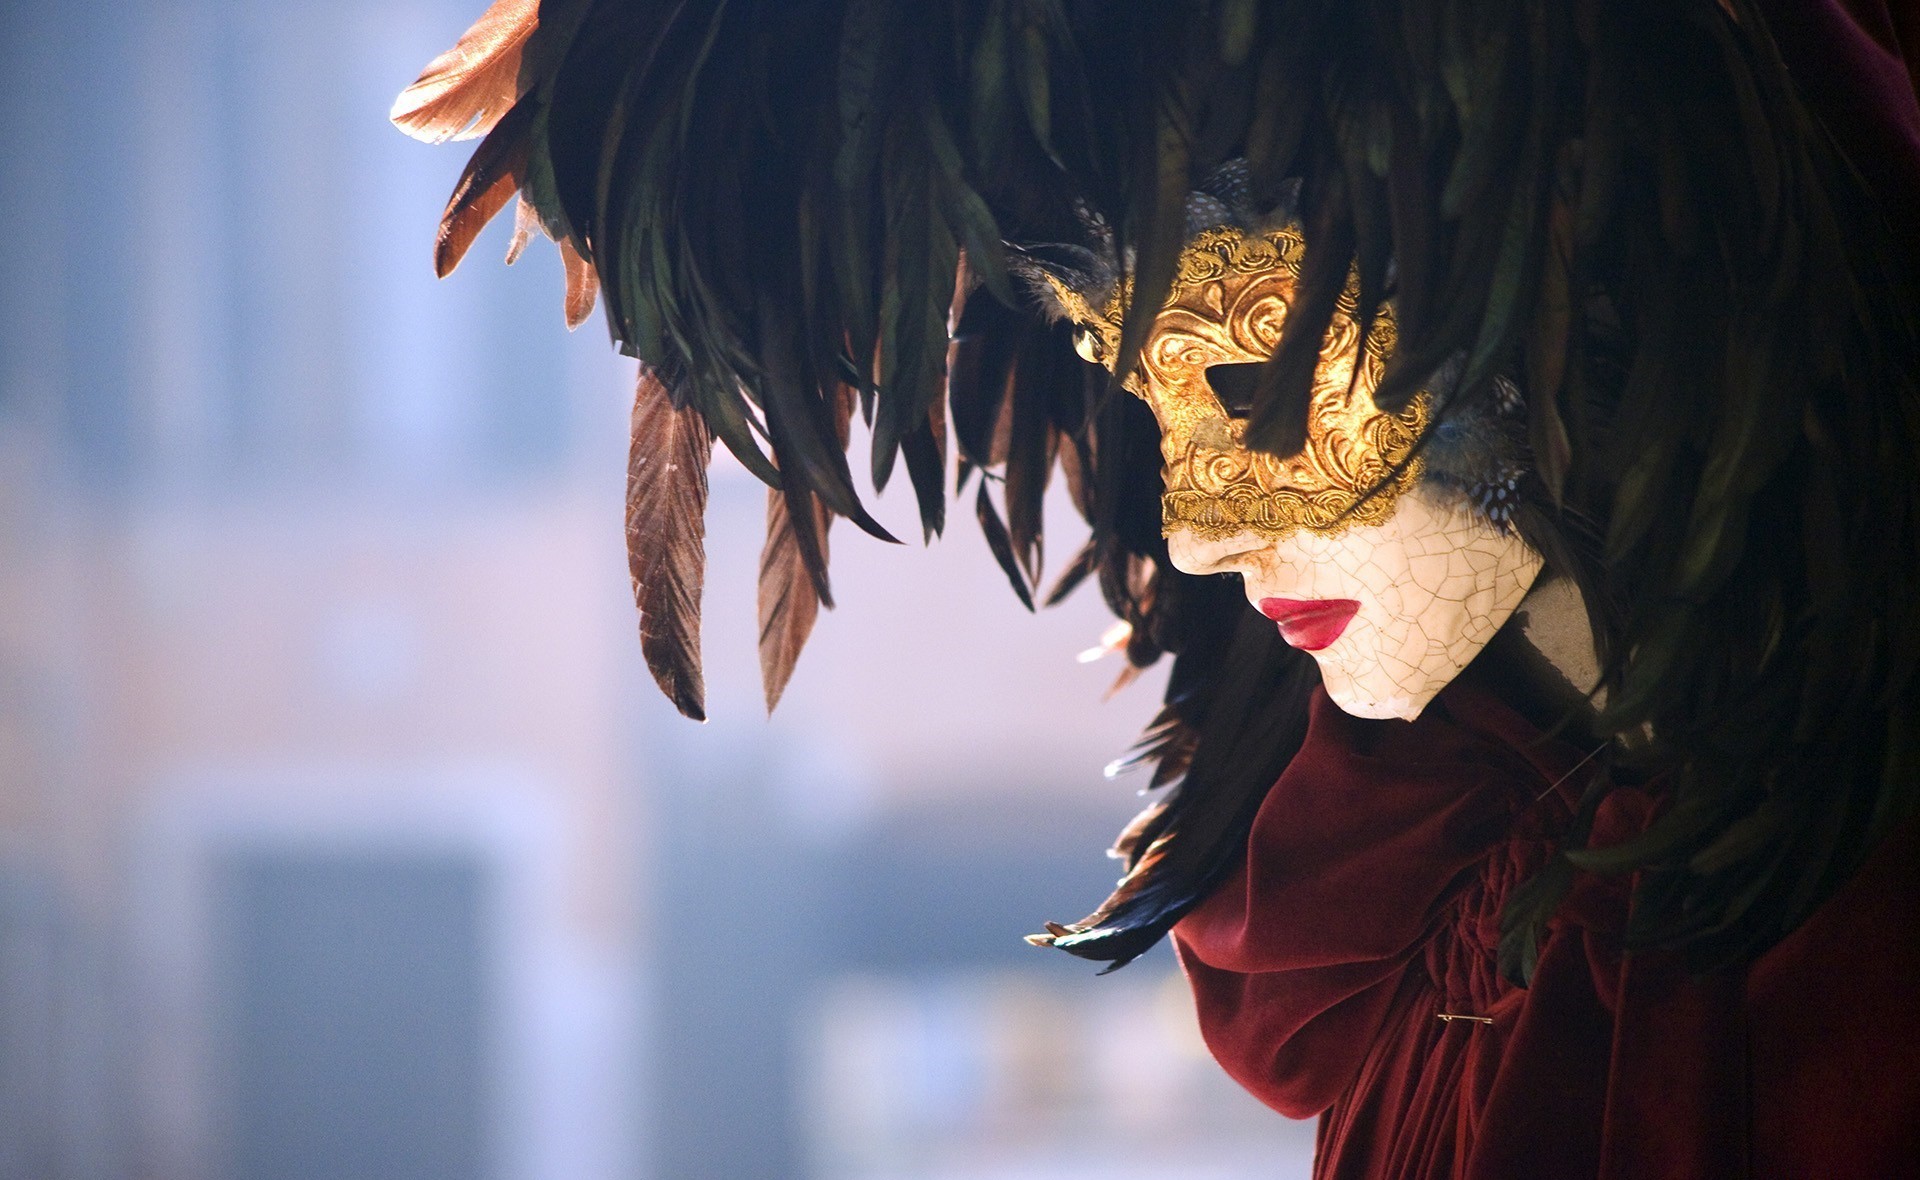 маска маскарад праздники mask masquerade holidays скачать